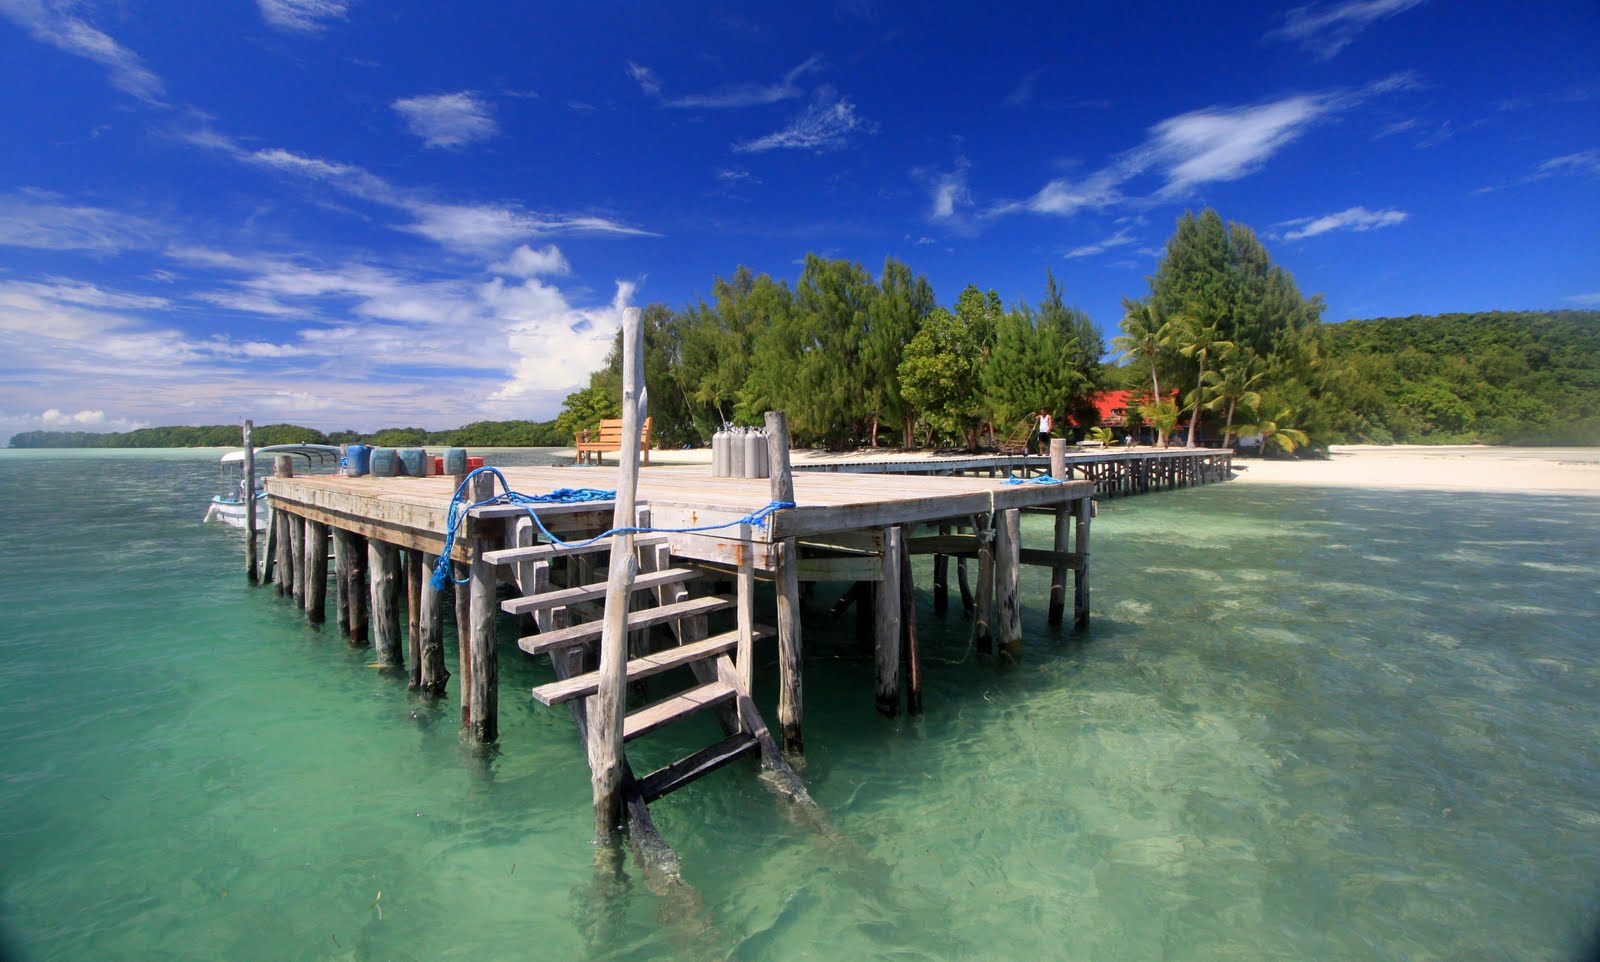 Foto de Carp Island Resort localizado em área natural